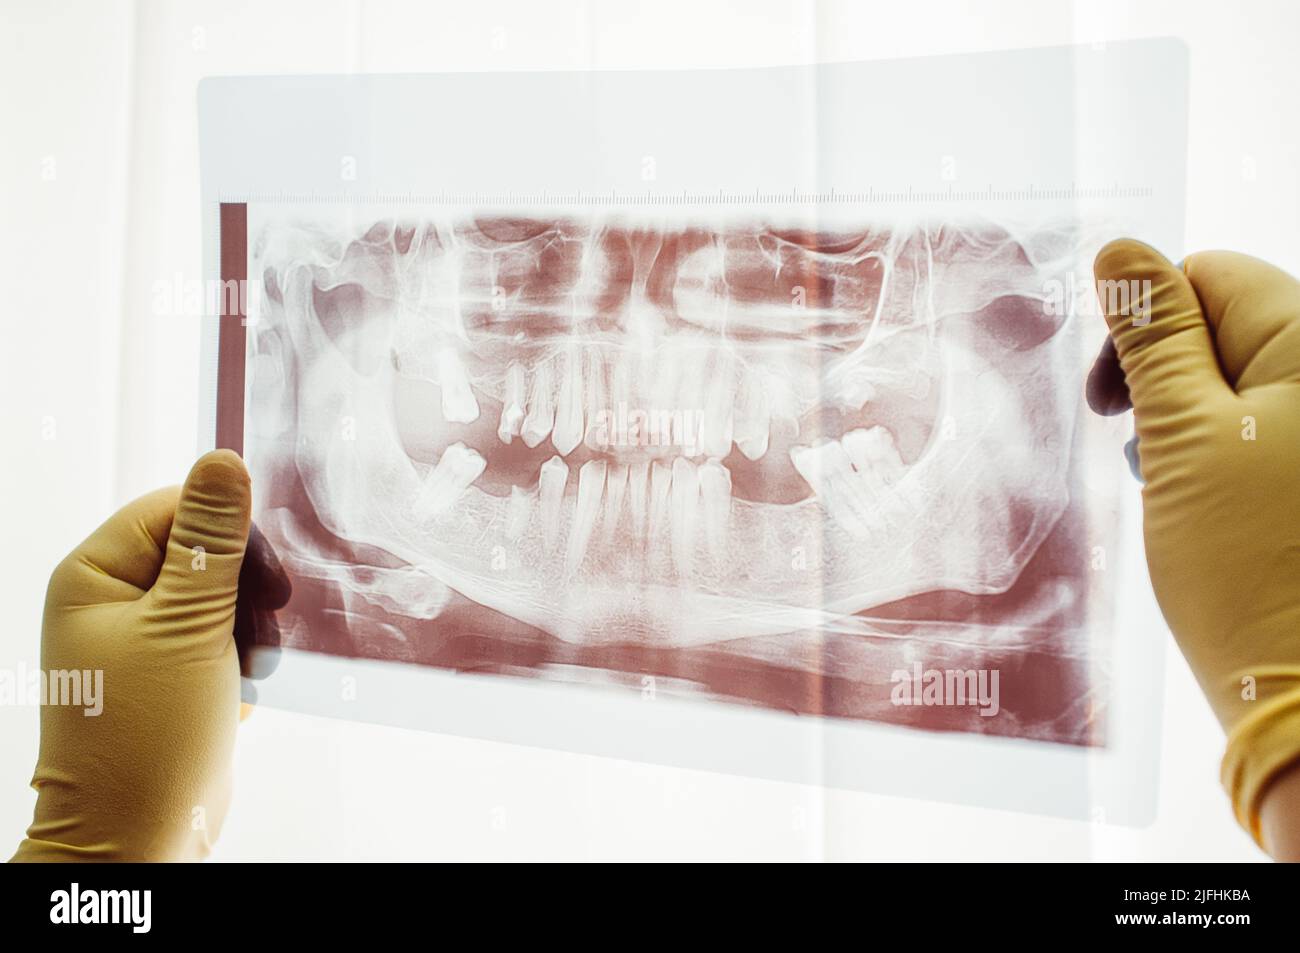 Balayage panoramique de la mutation dentaire en gros plan Banque D'Images